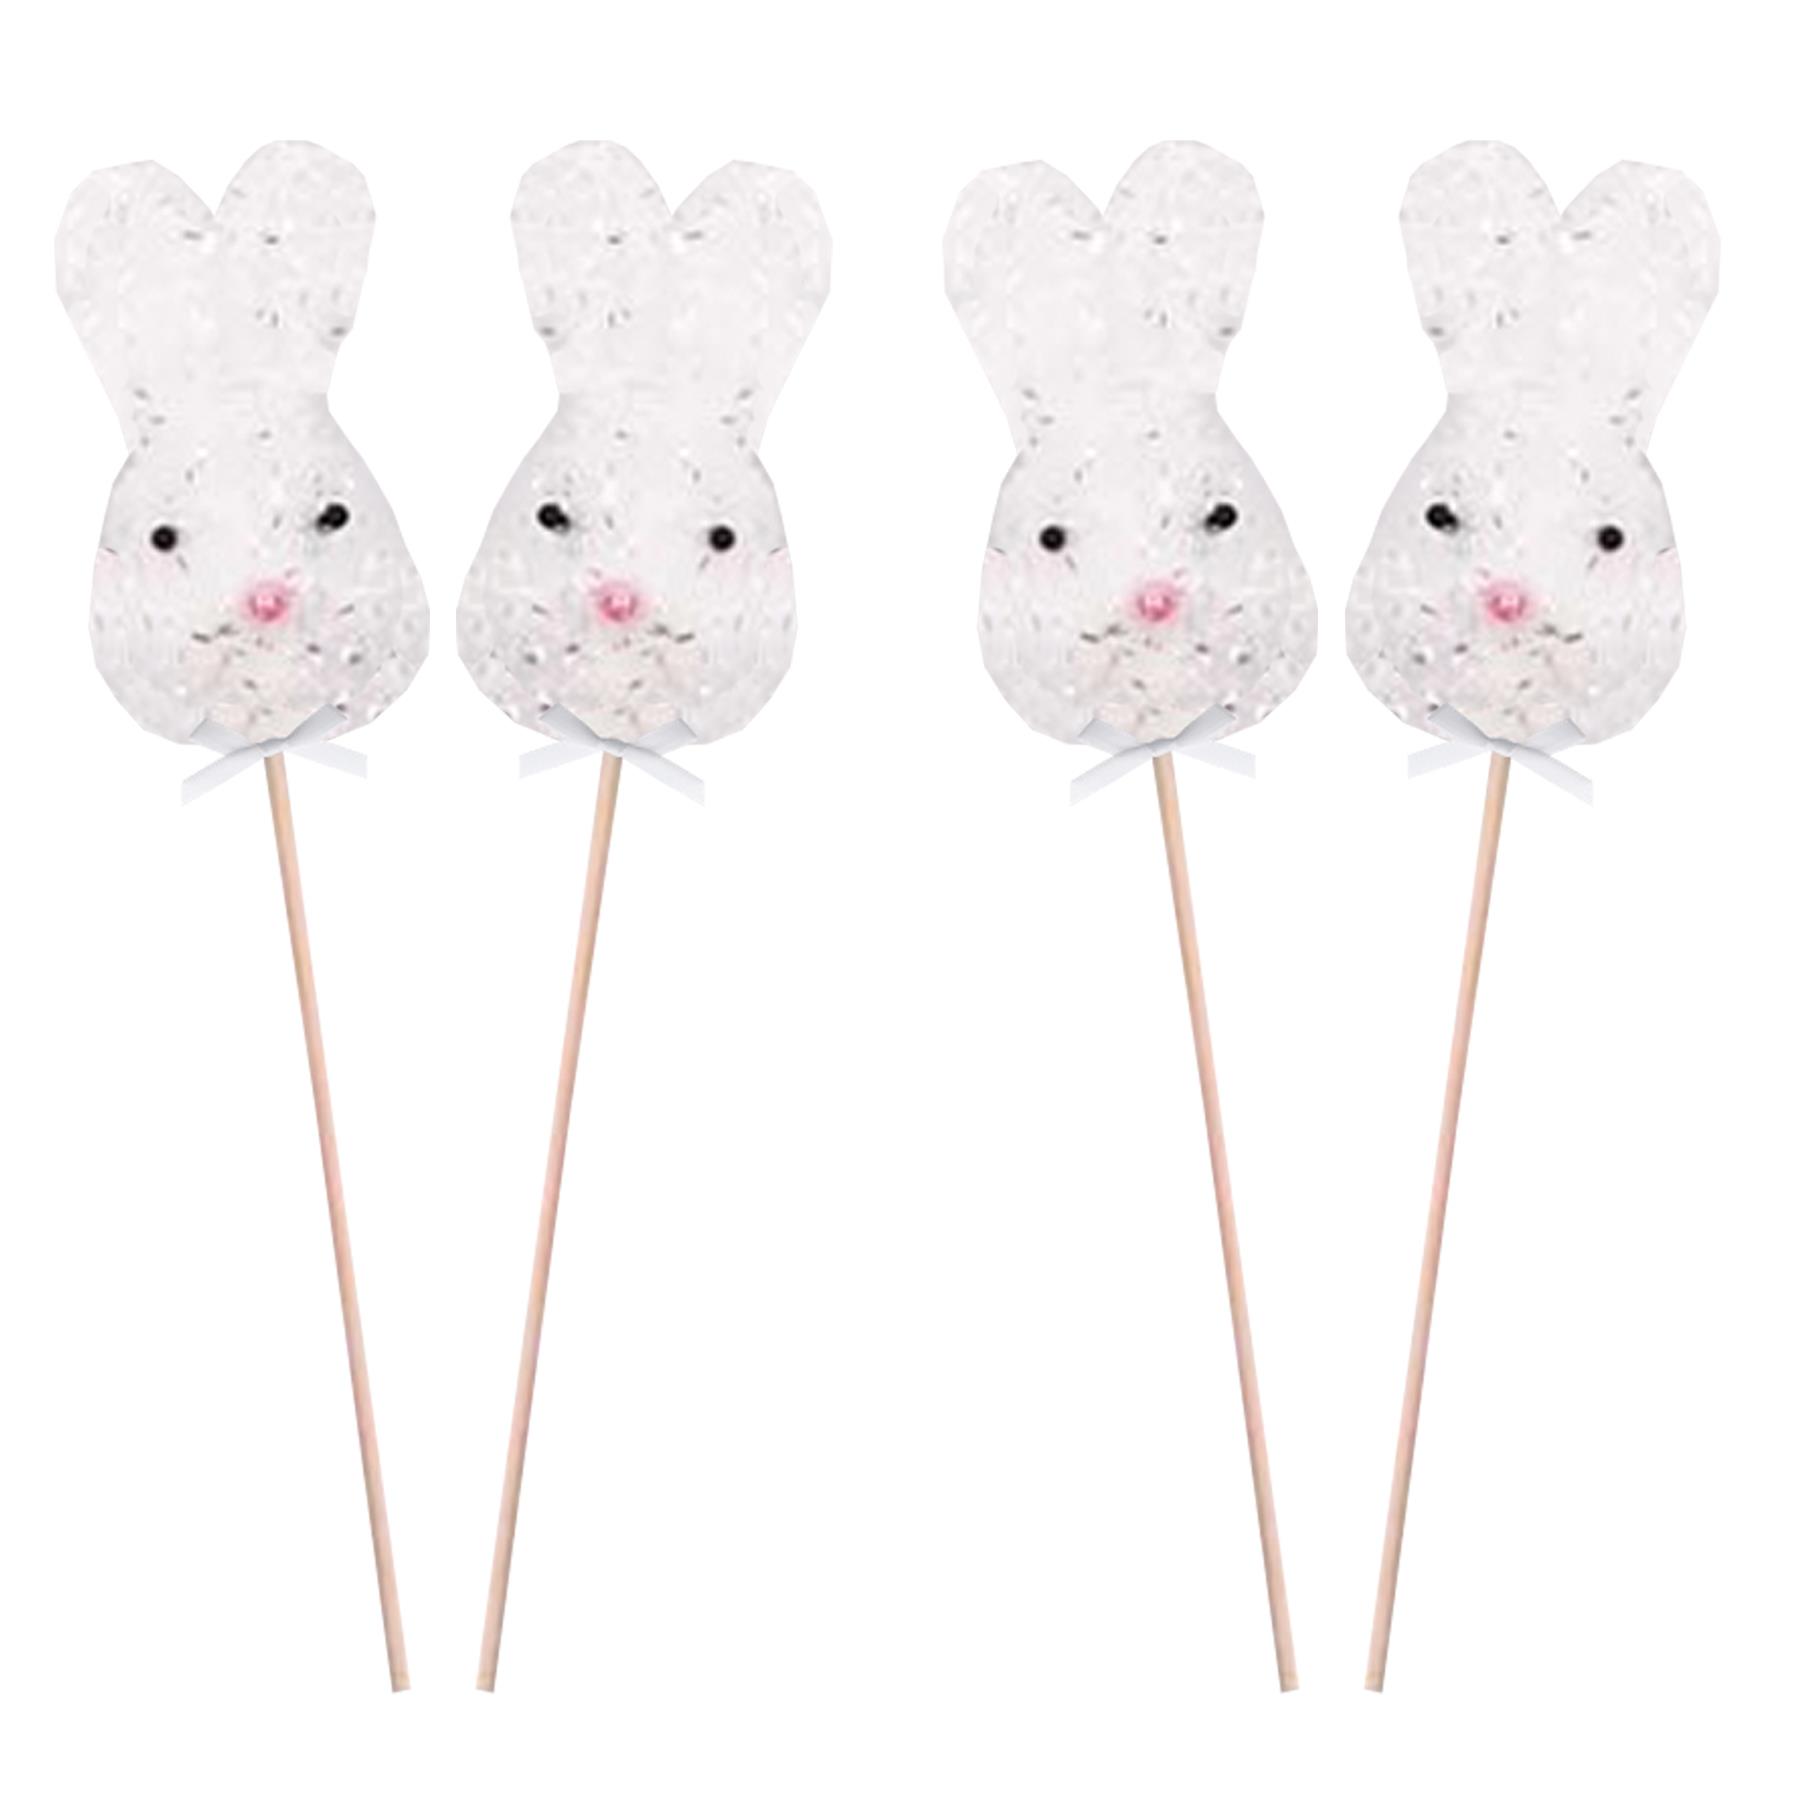 Easter Decorations, Garden Picks, Egg Hunt - 4 x White Bunny Head Picks